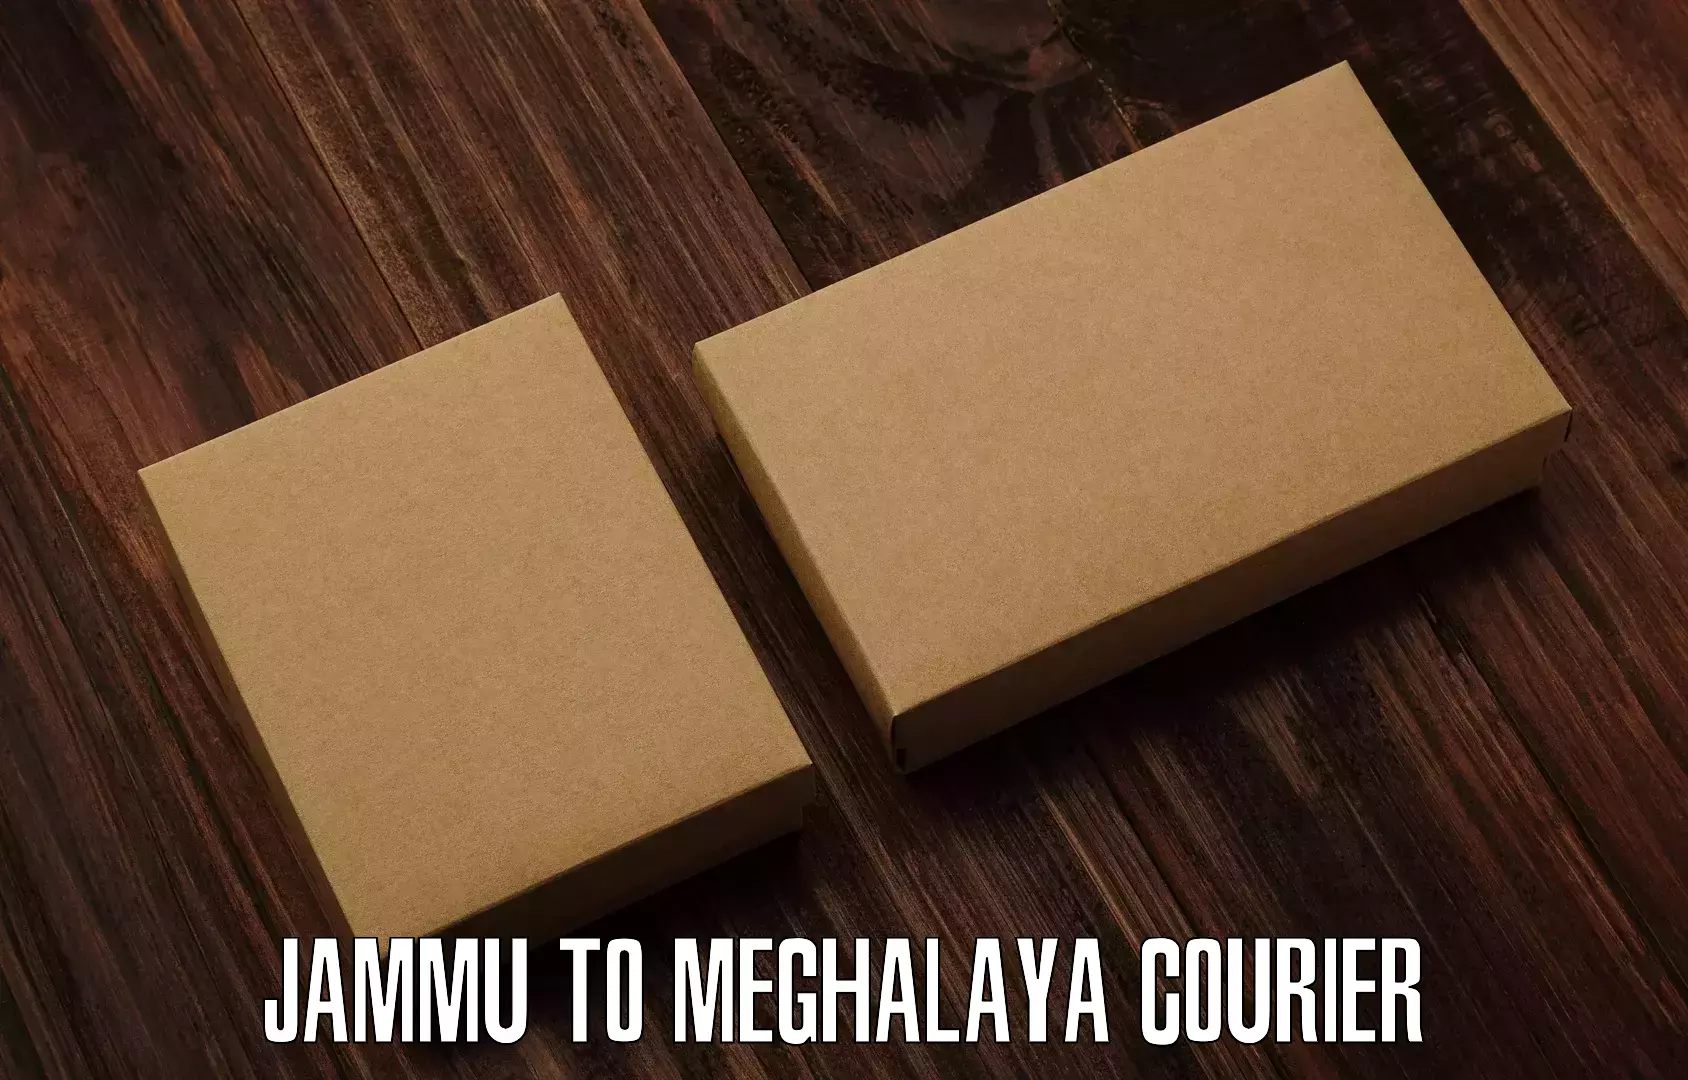 User-friendly courier app Jammu to Jowai